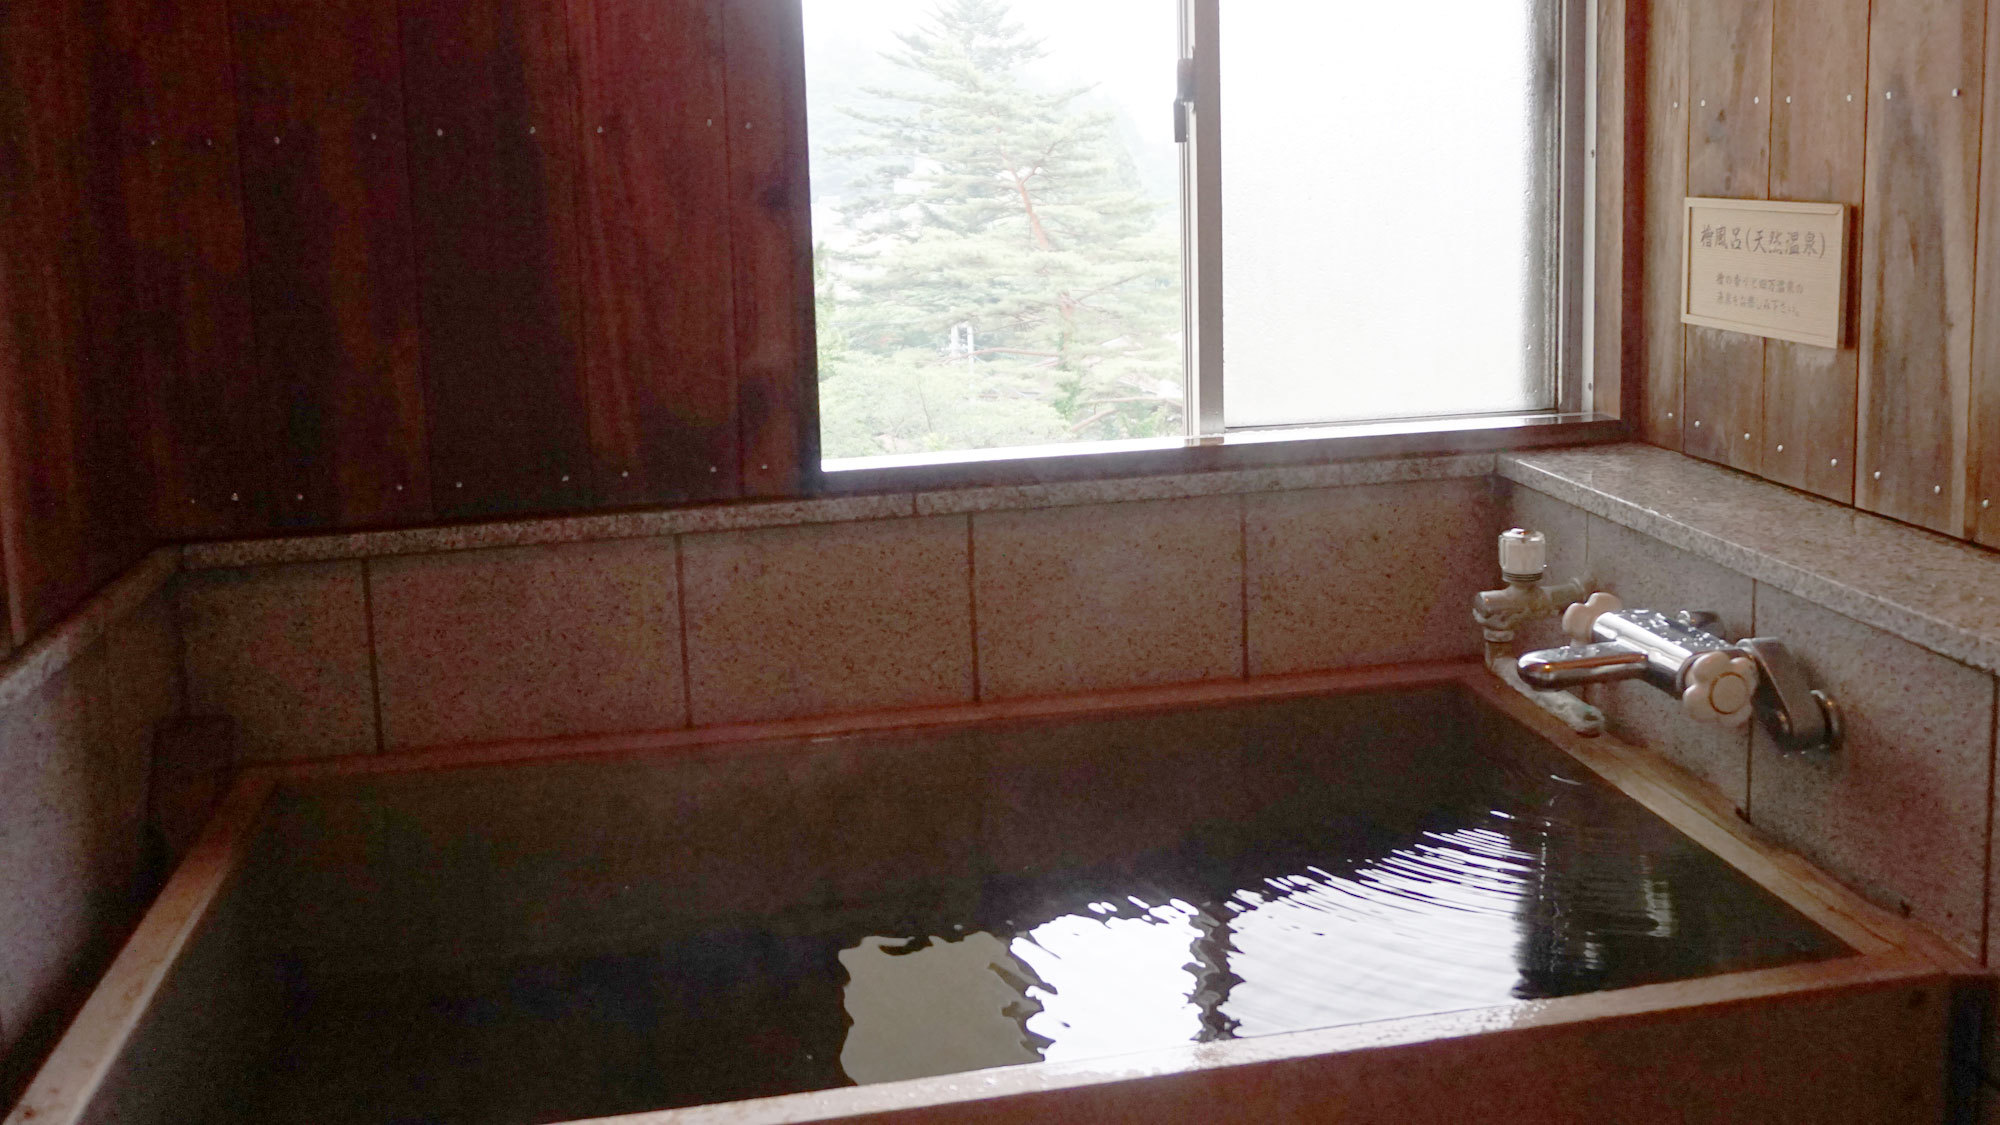 【檜風呂付き客室】かぐわしい檜の香り漂う室内のお風呂。源泉掛け流しの温泉を存分にお楽しみください。